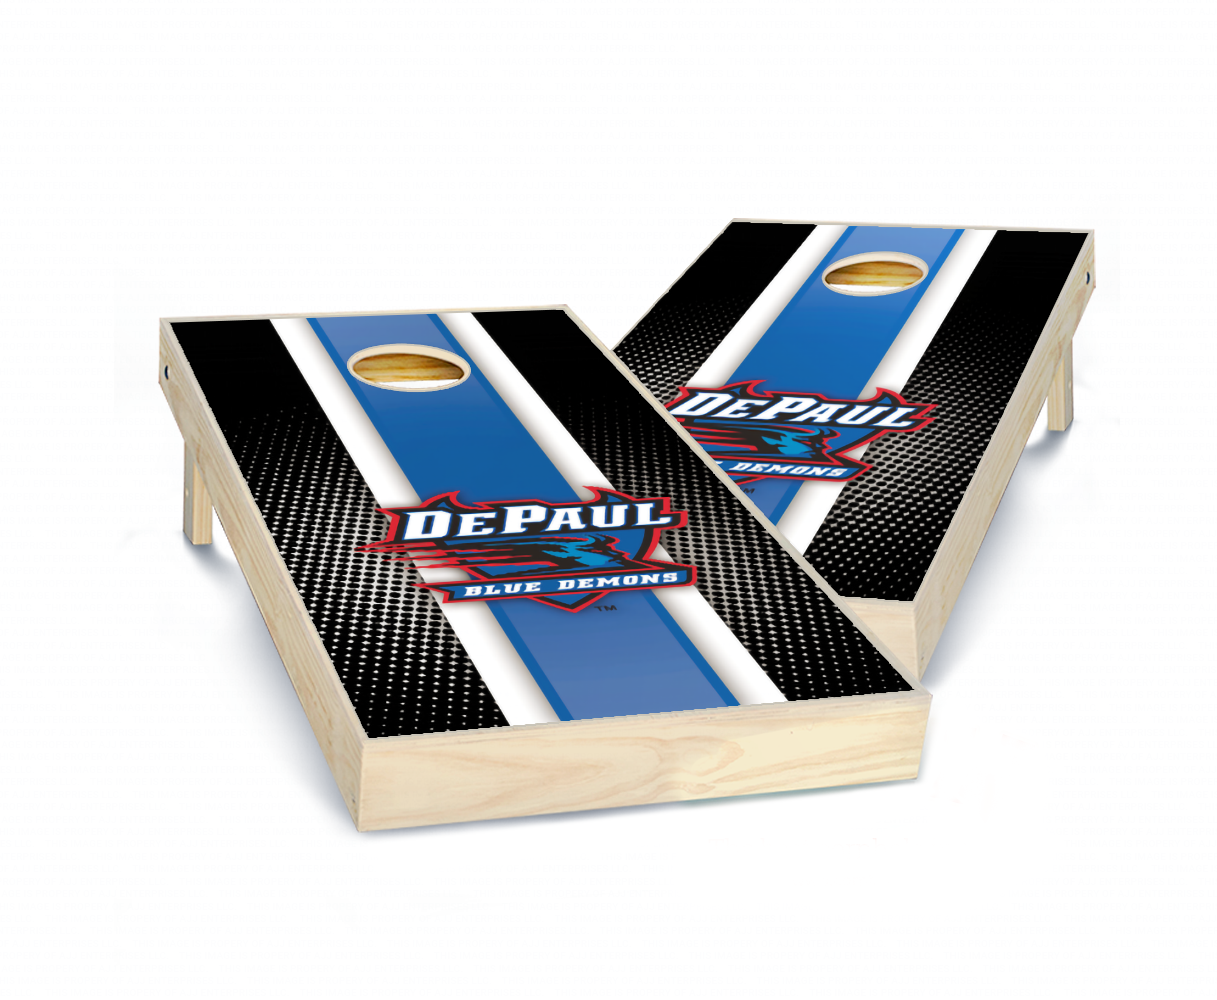 "DePaul Striped" Cornhole Boards